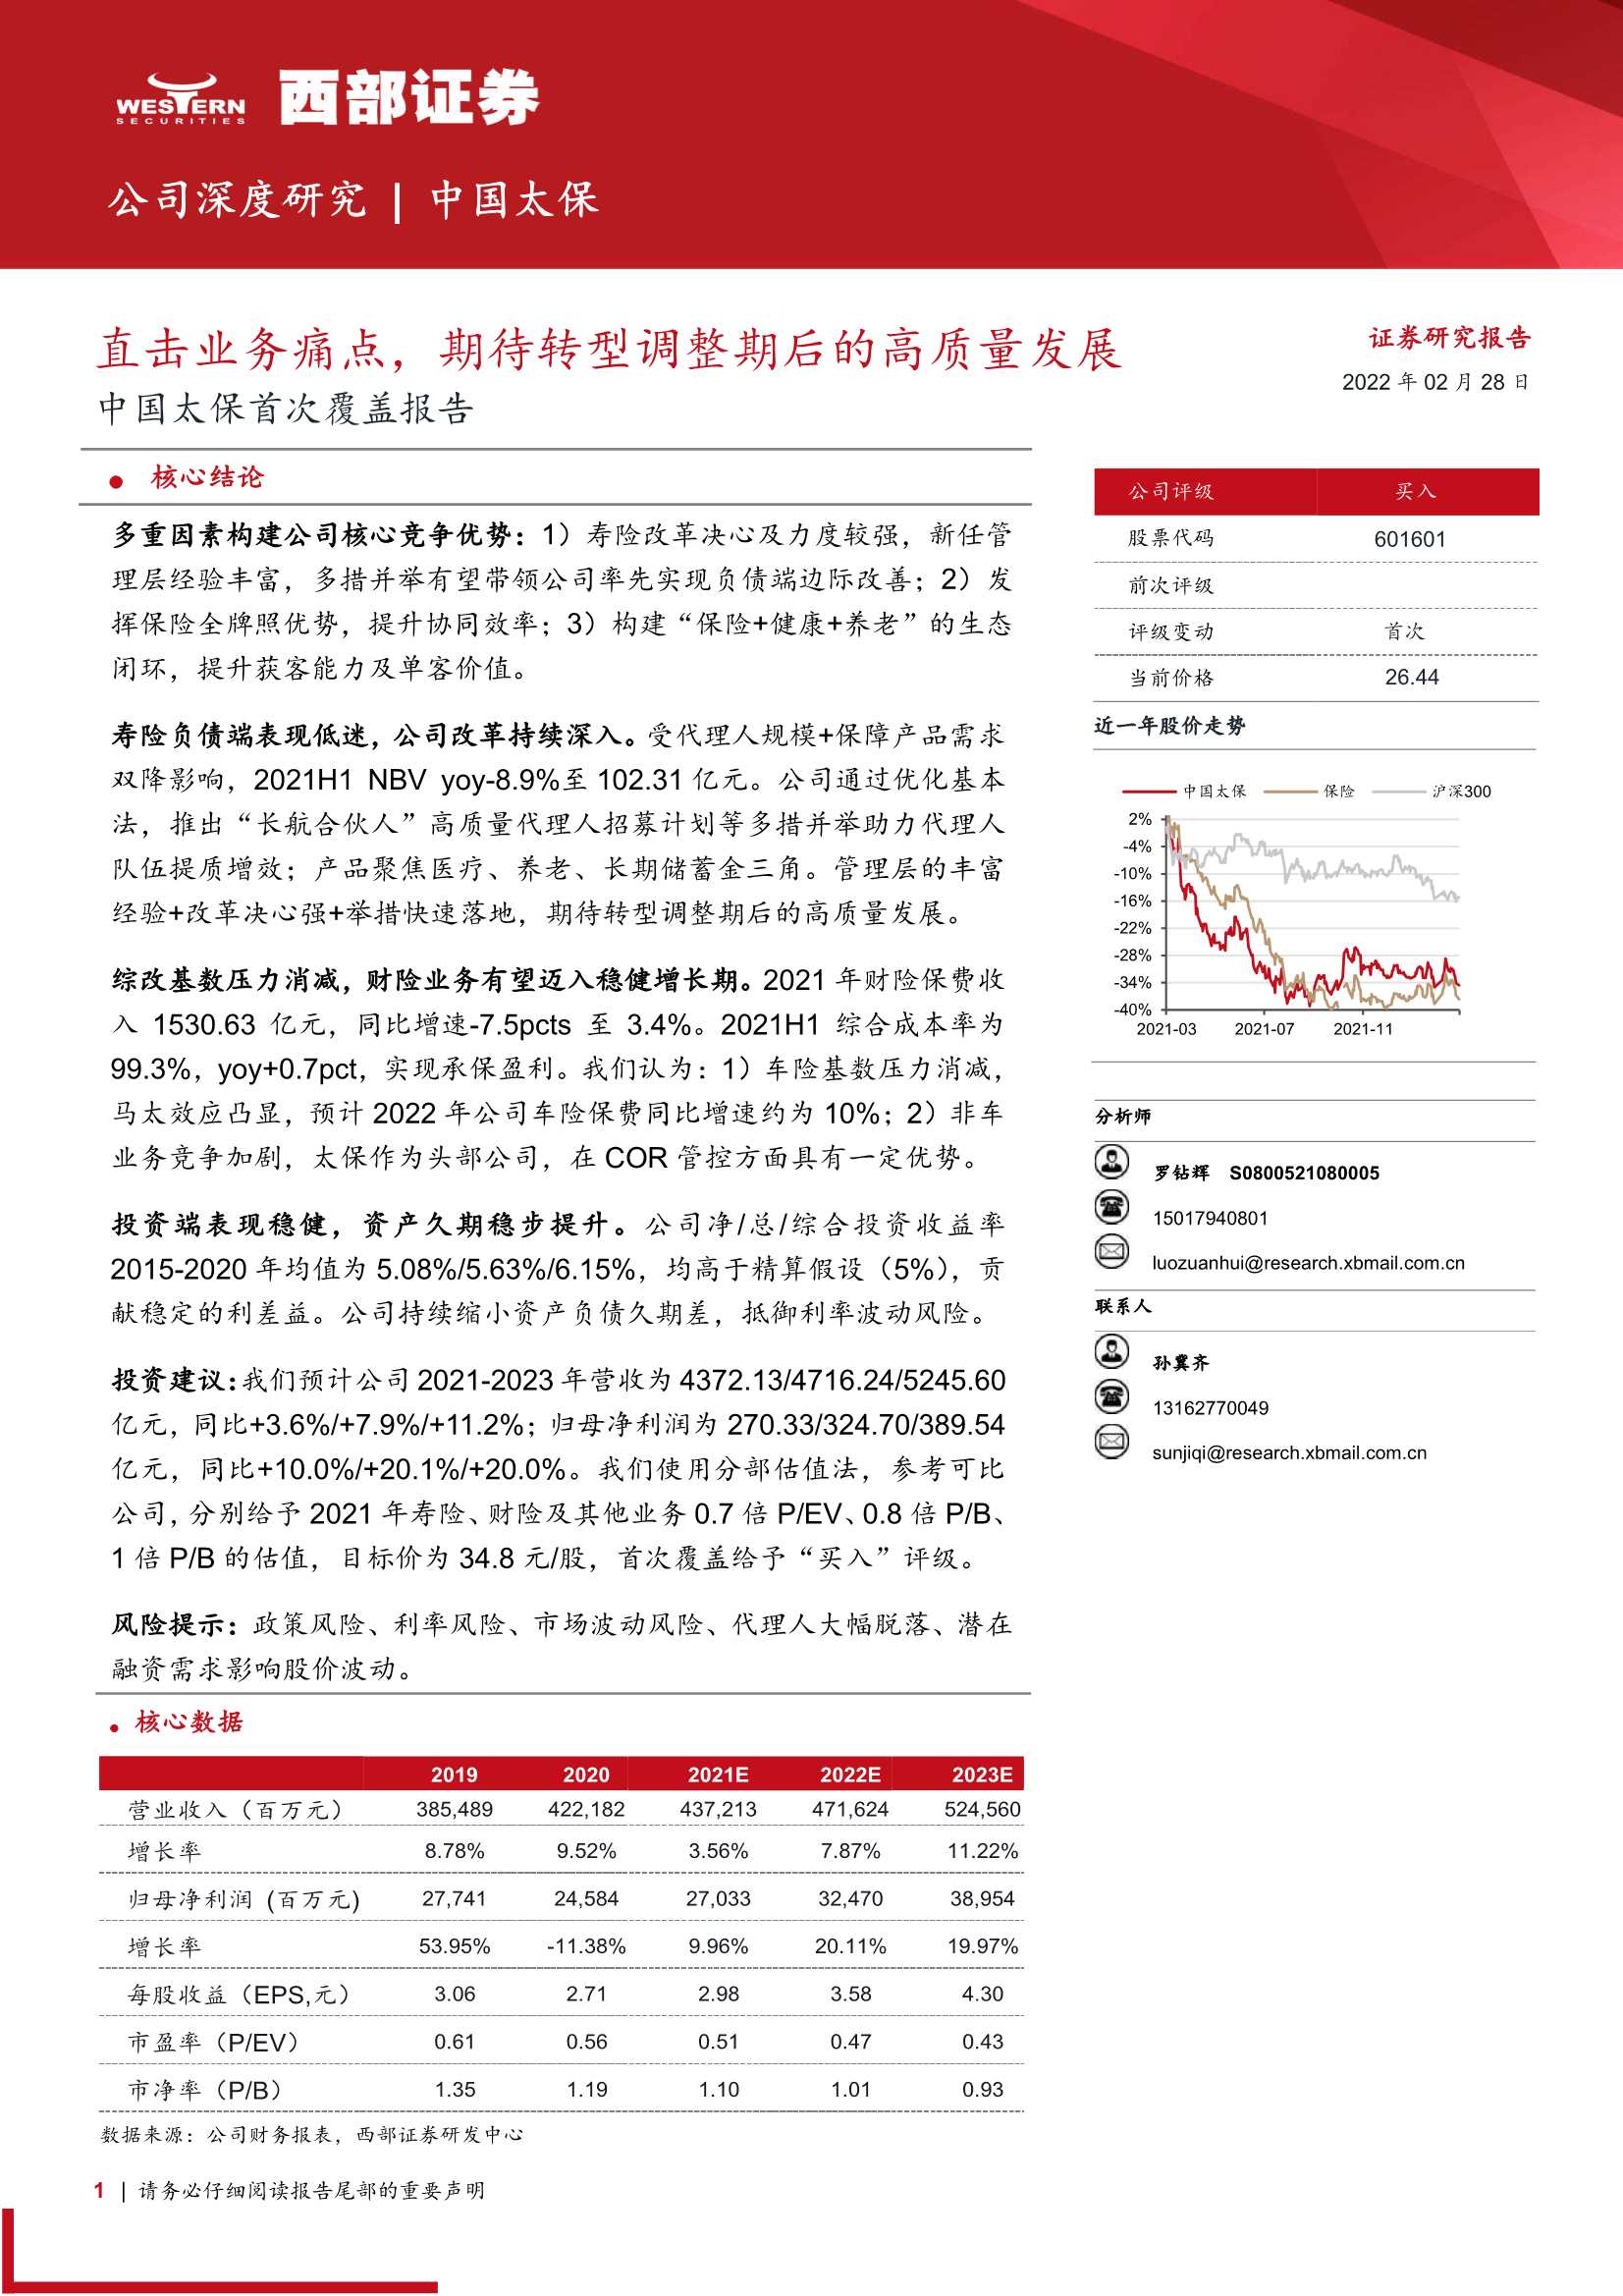 西部证券-中国太保-601601-首次覆盖报告：直击业务痛点，期待转型调整期后的高质量发展-20220228-24页